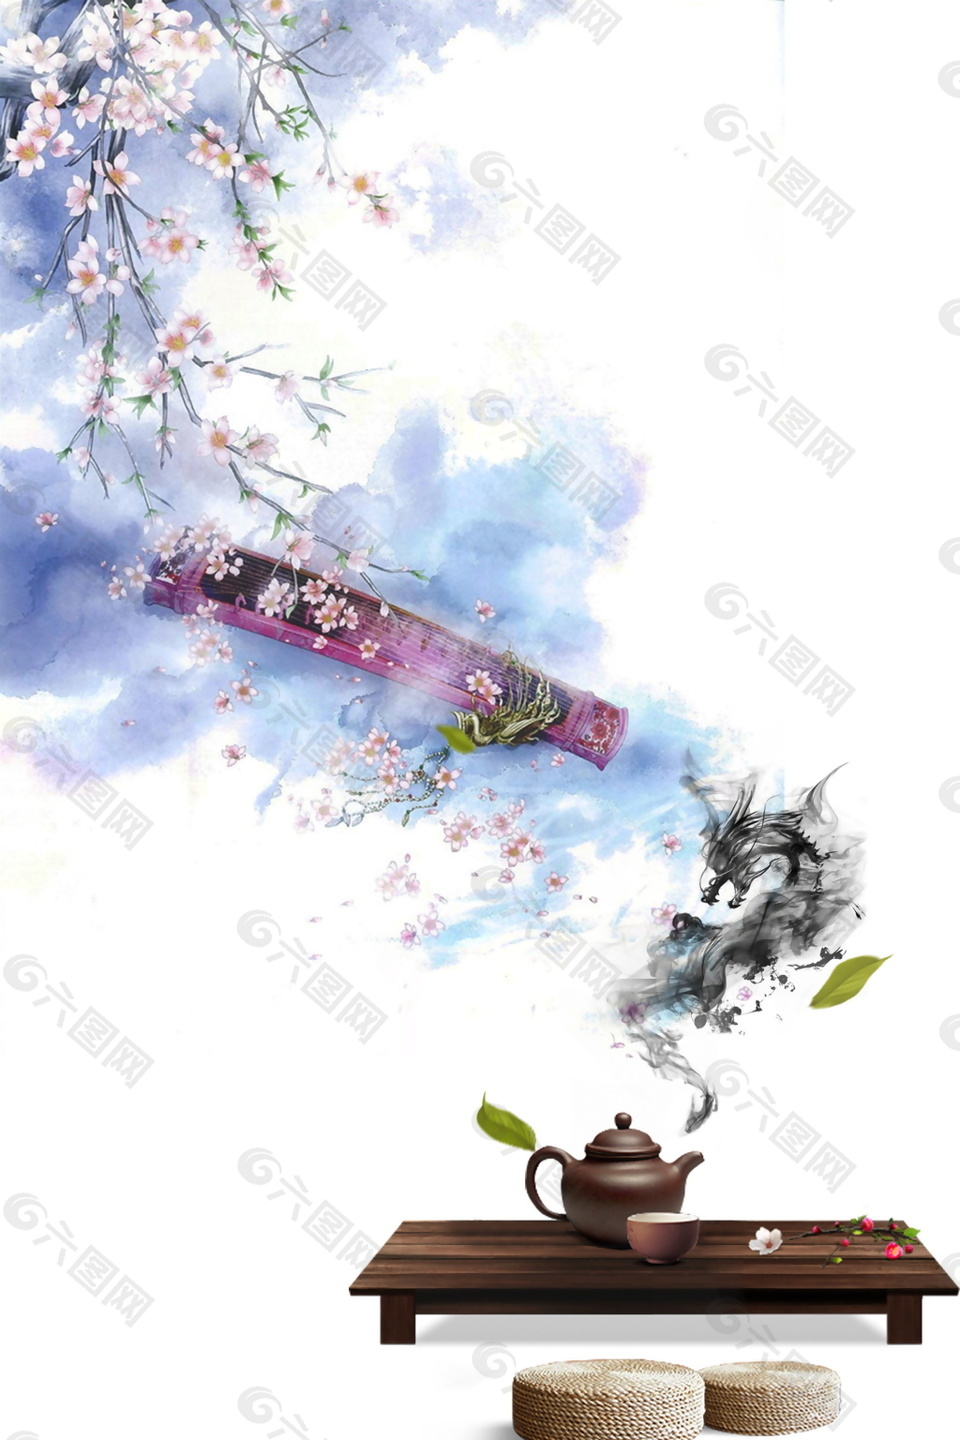 古典风格茶叶文化海报背景设计